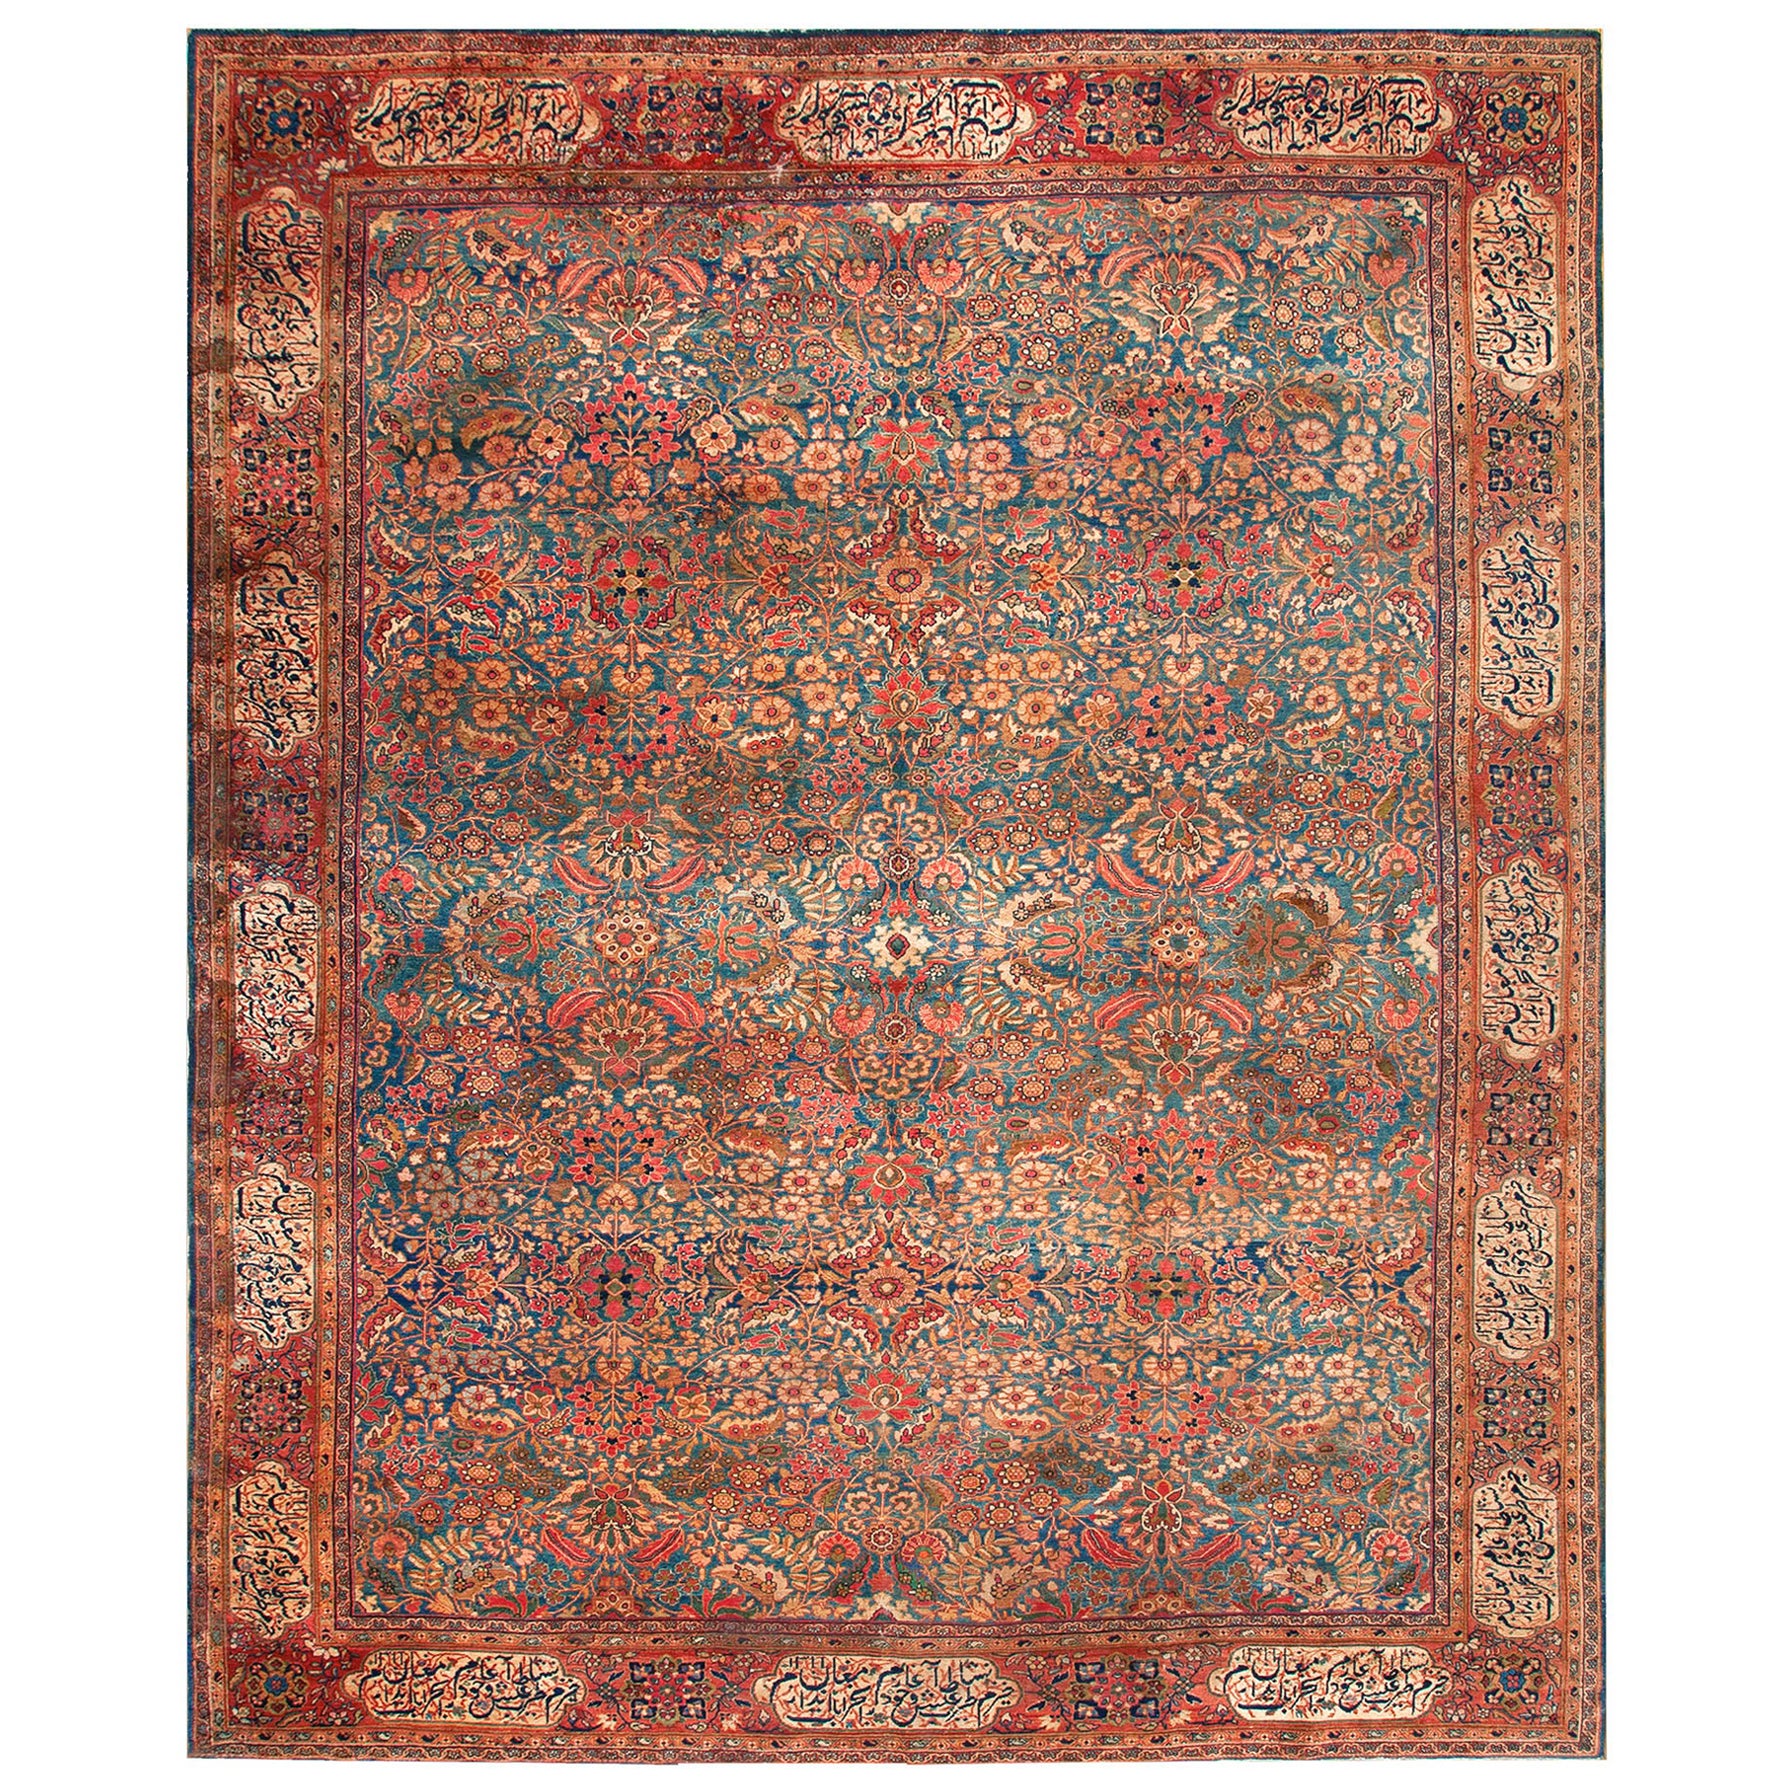 19th Century Persian Sarouk Farahan Carpet ( 10'6" x 13'6" - 320 x 412 )